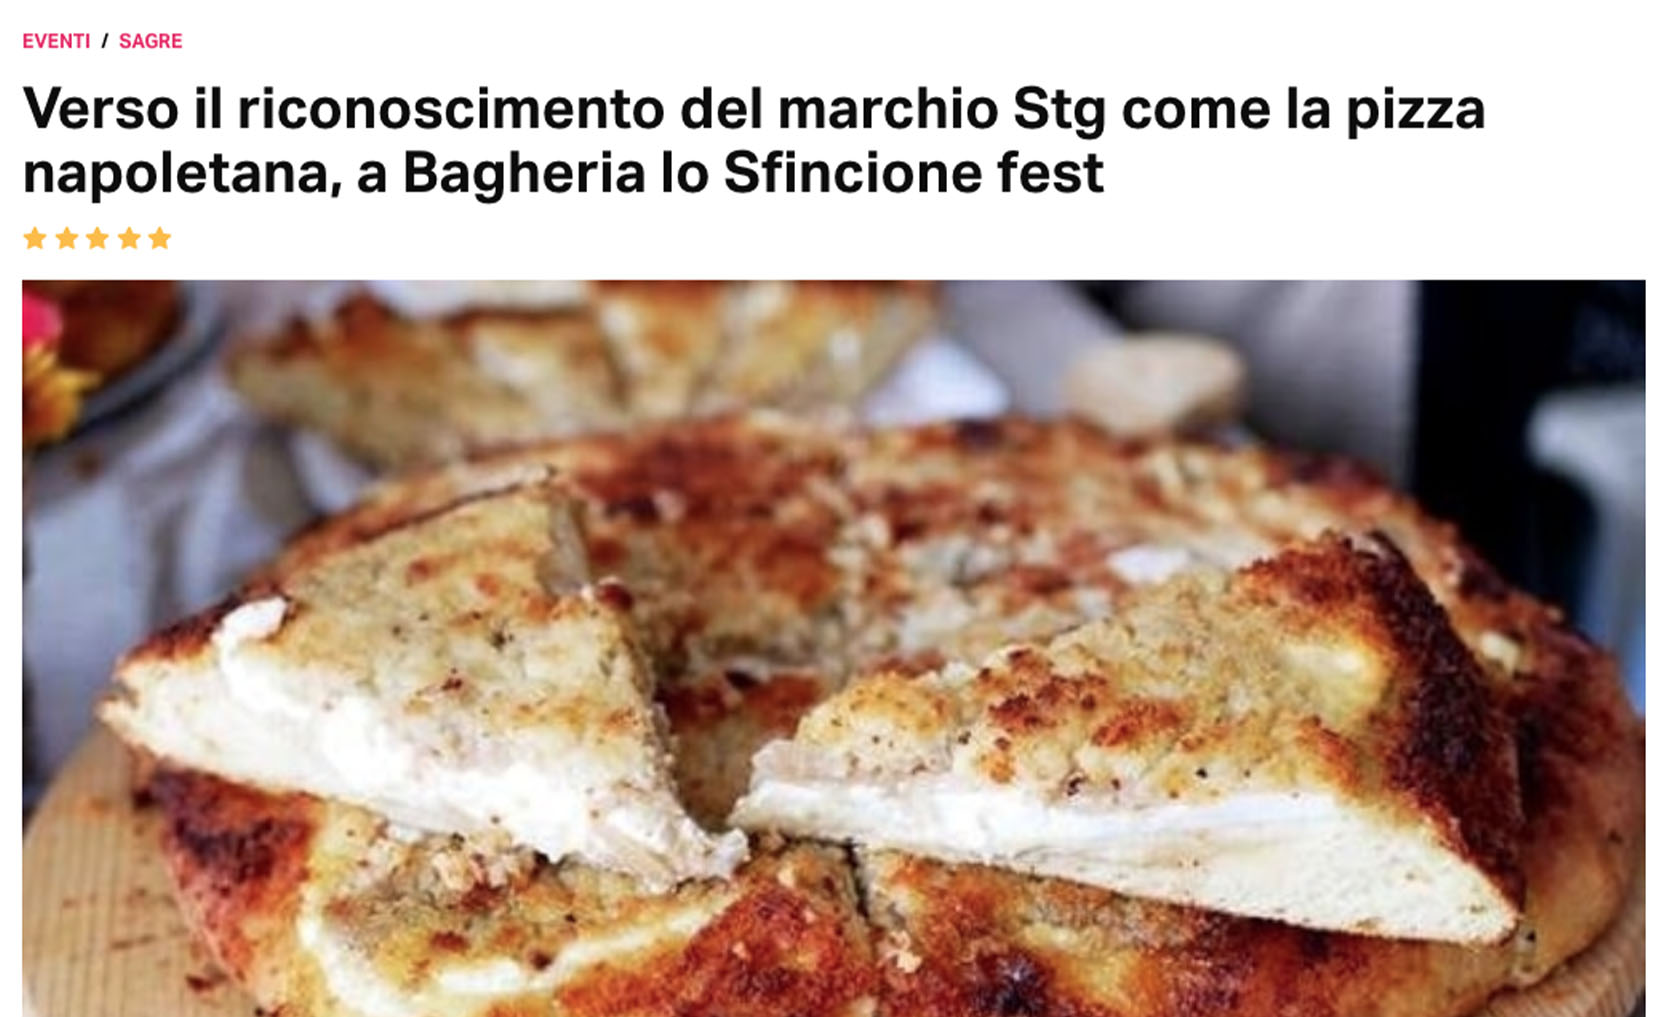 Verso il riconoscimento del marchio Stg come la pizza napoletana, a Bagheria lo Sfincione fest